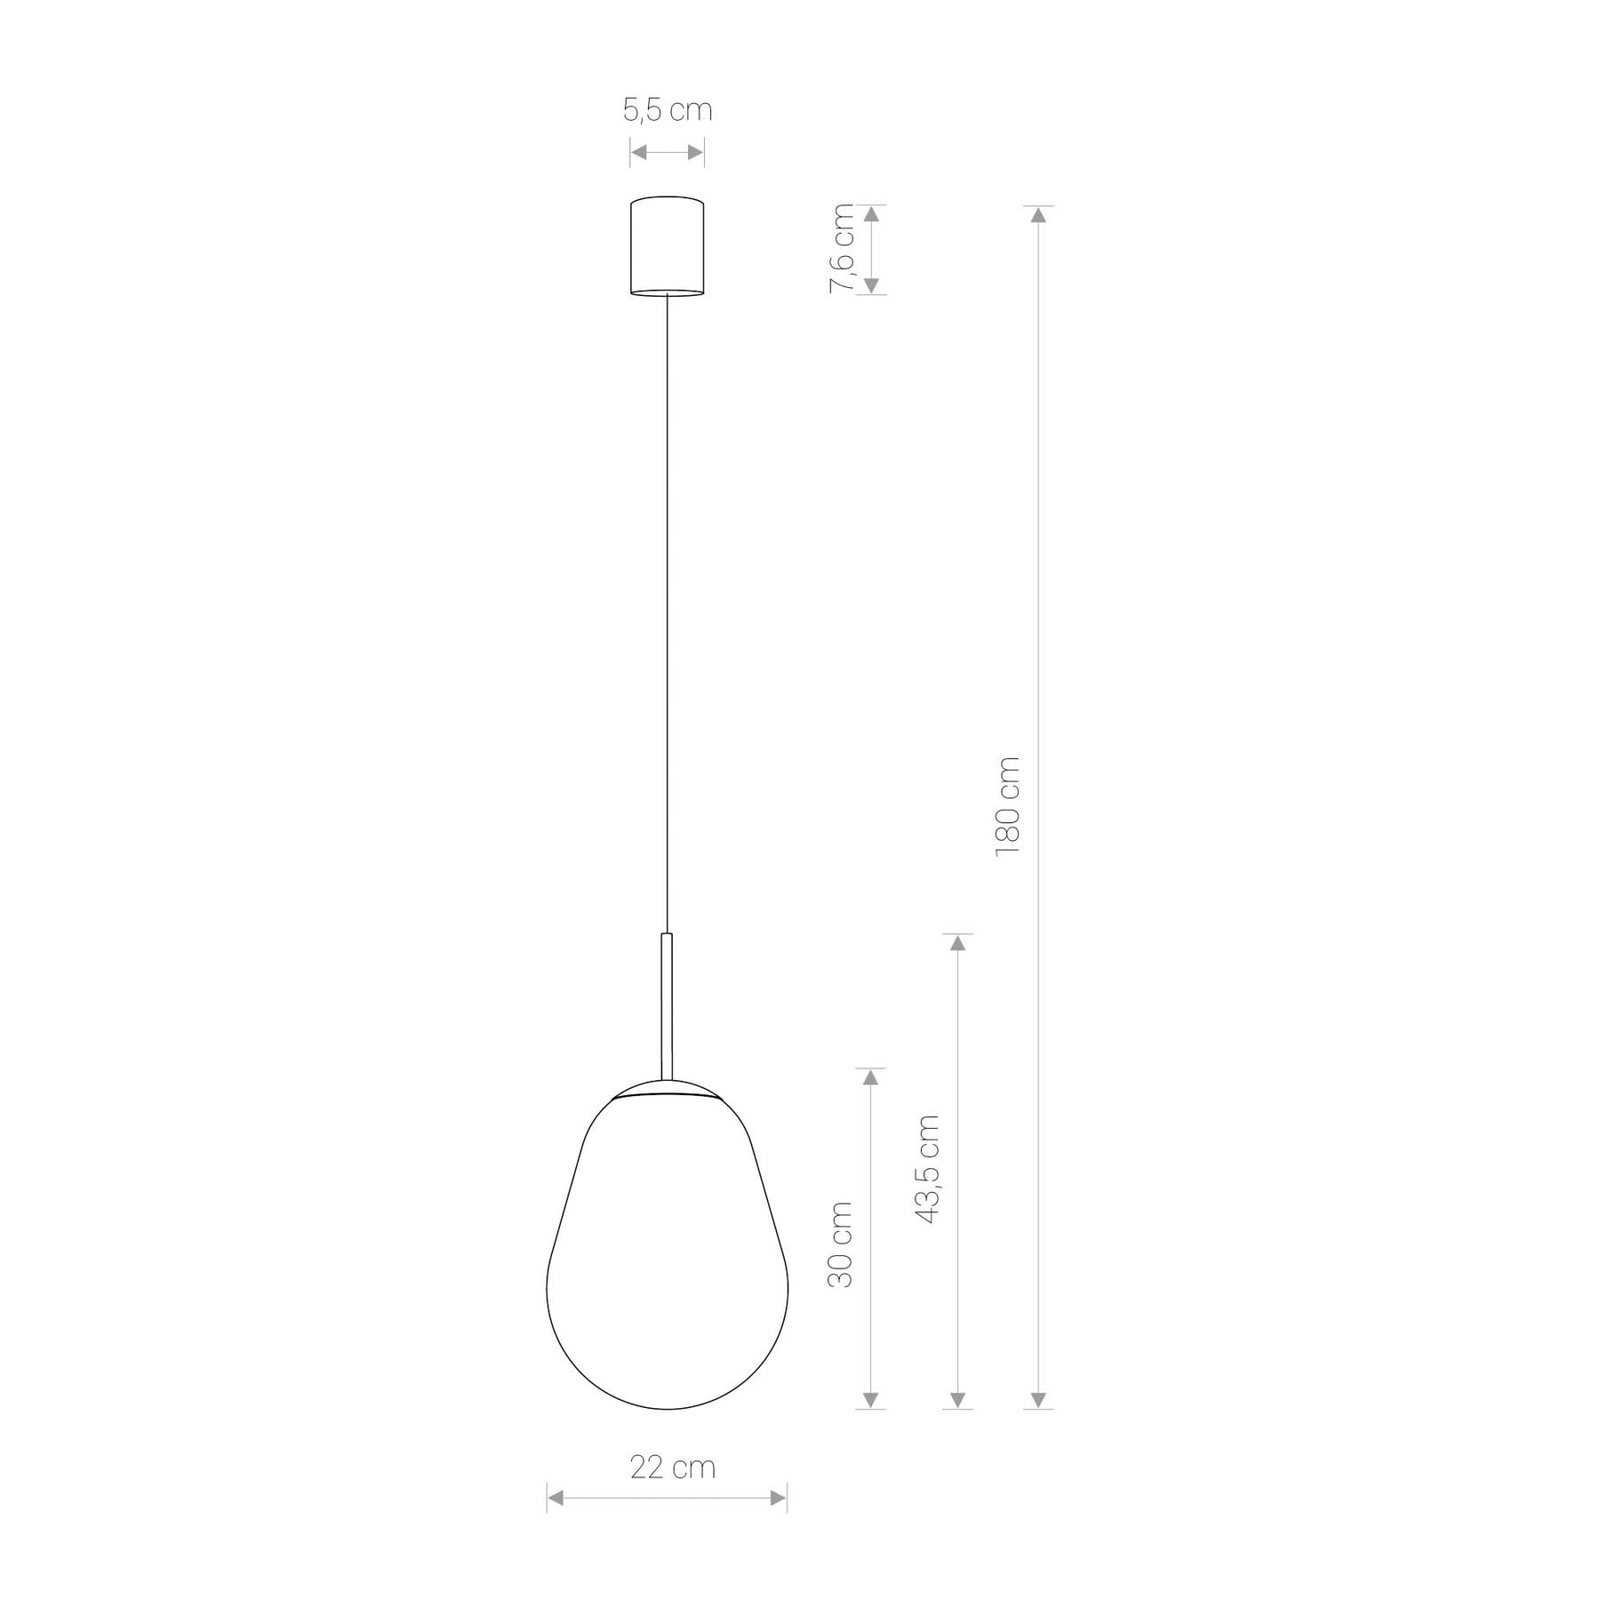 Peer hanglamp van glas, messing/helder, hoogte 30cm